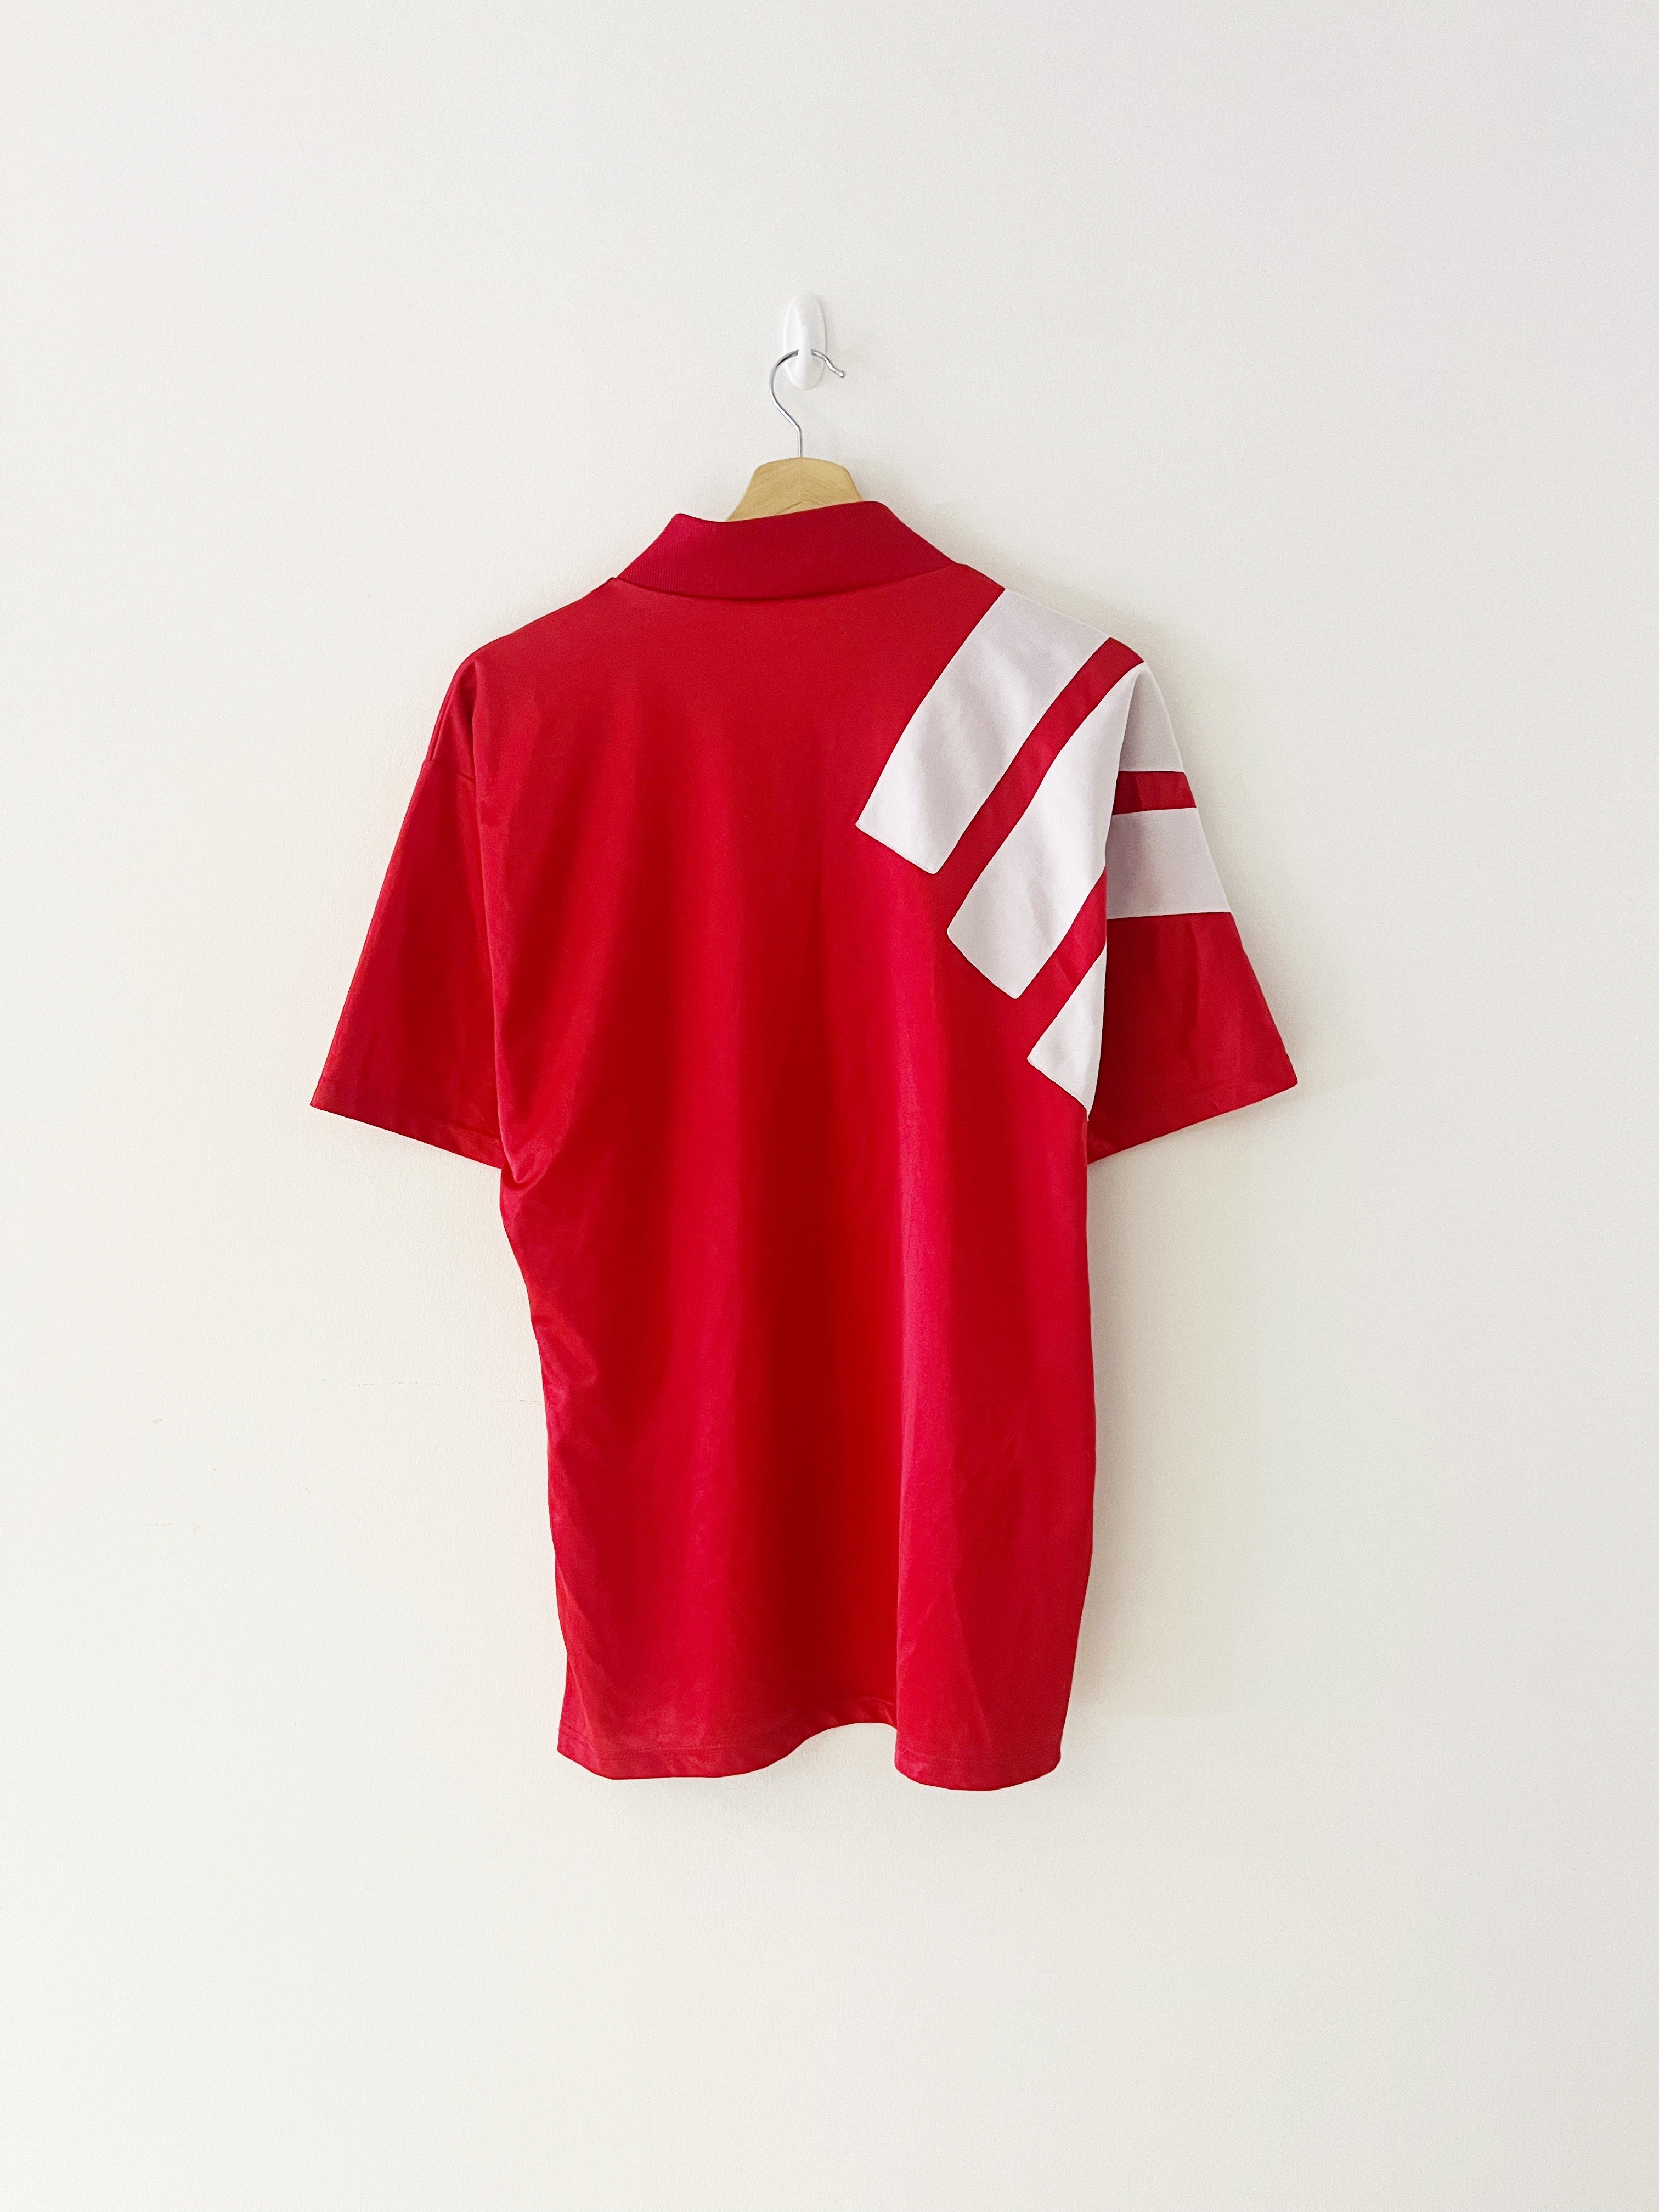 1992/93 Liverpool Centenary Home Shirt (M) 8.5/10